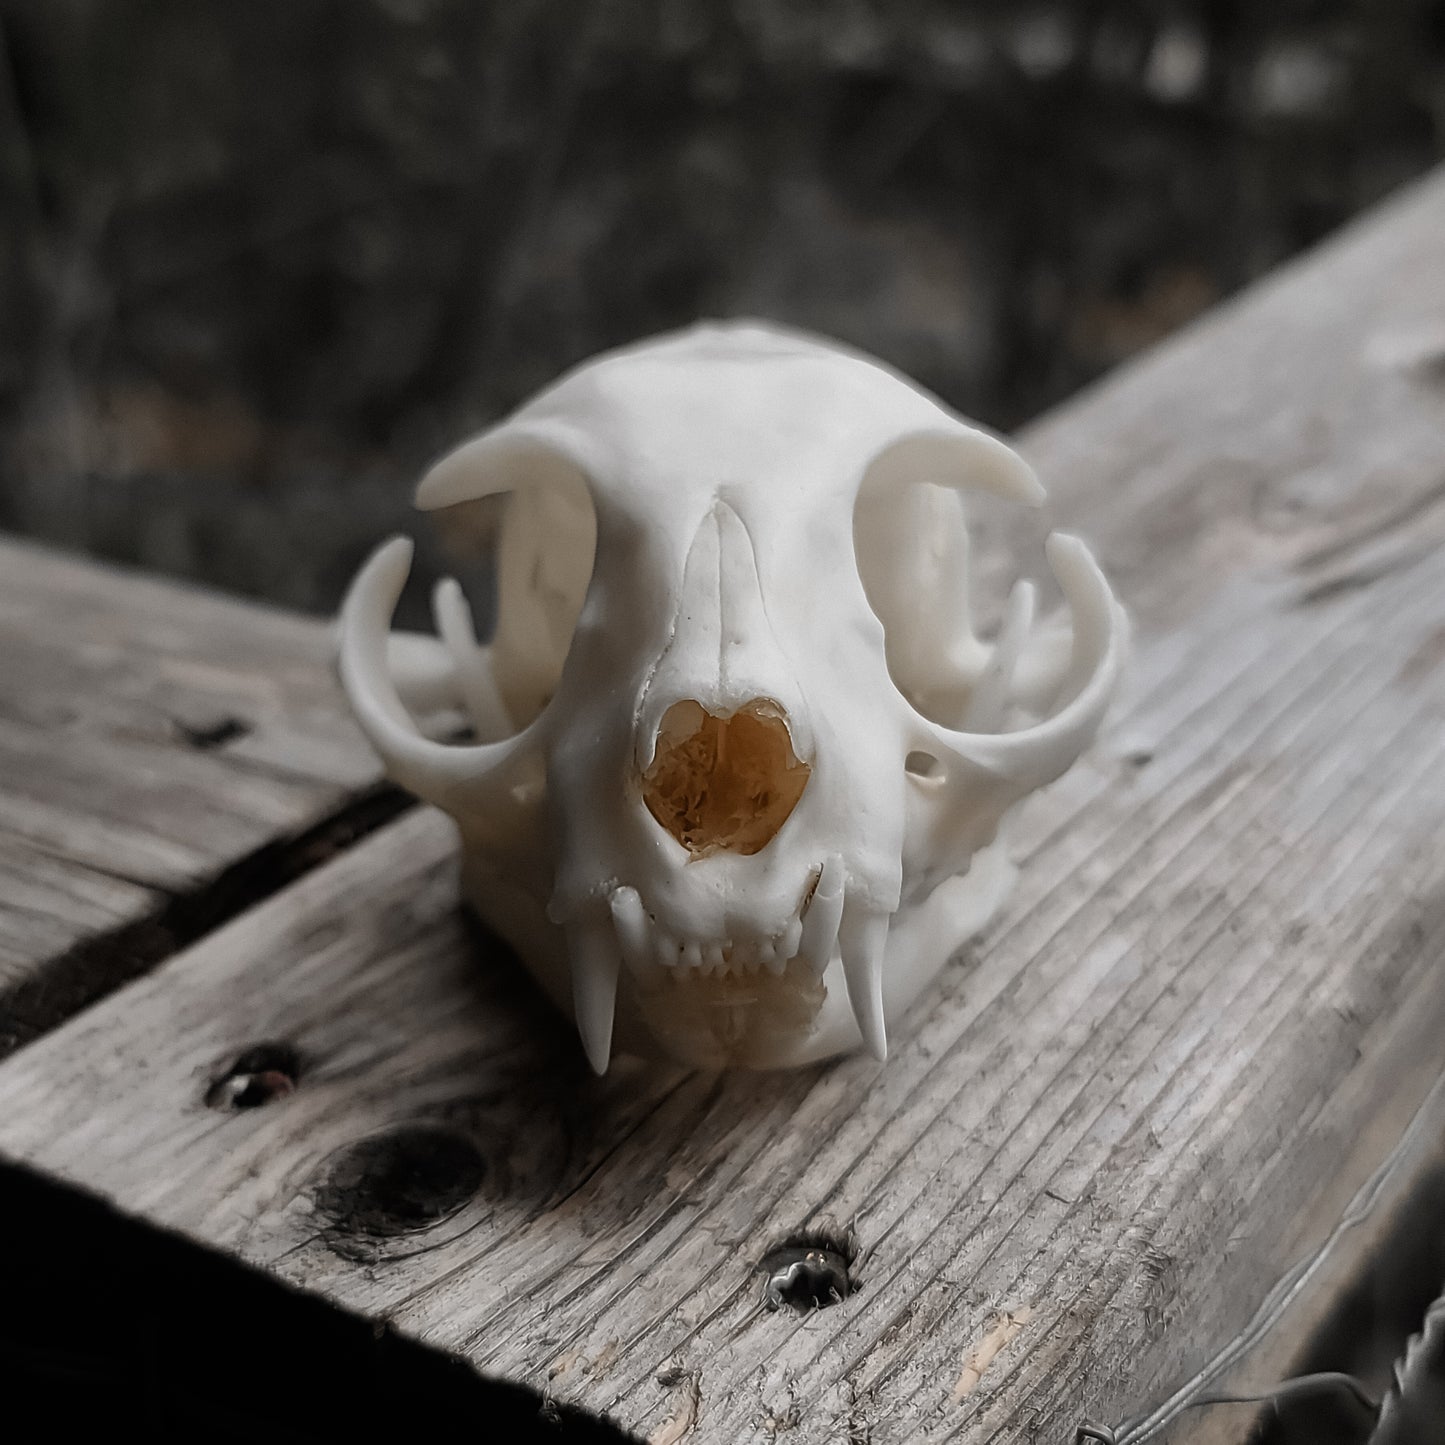 Feline Skull